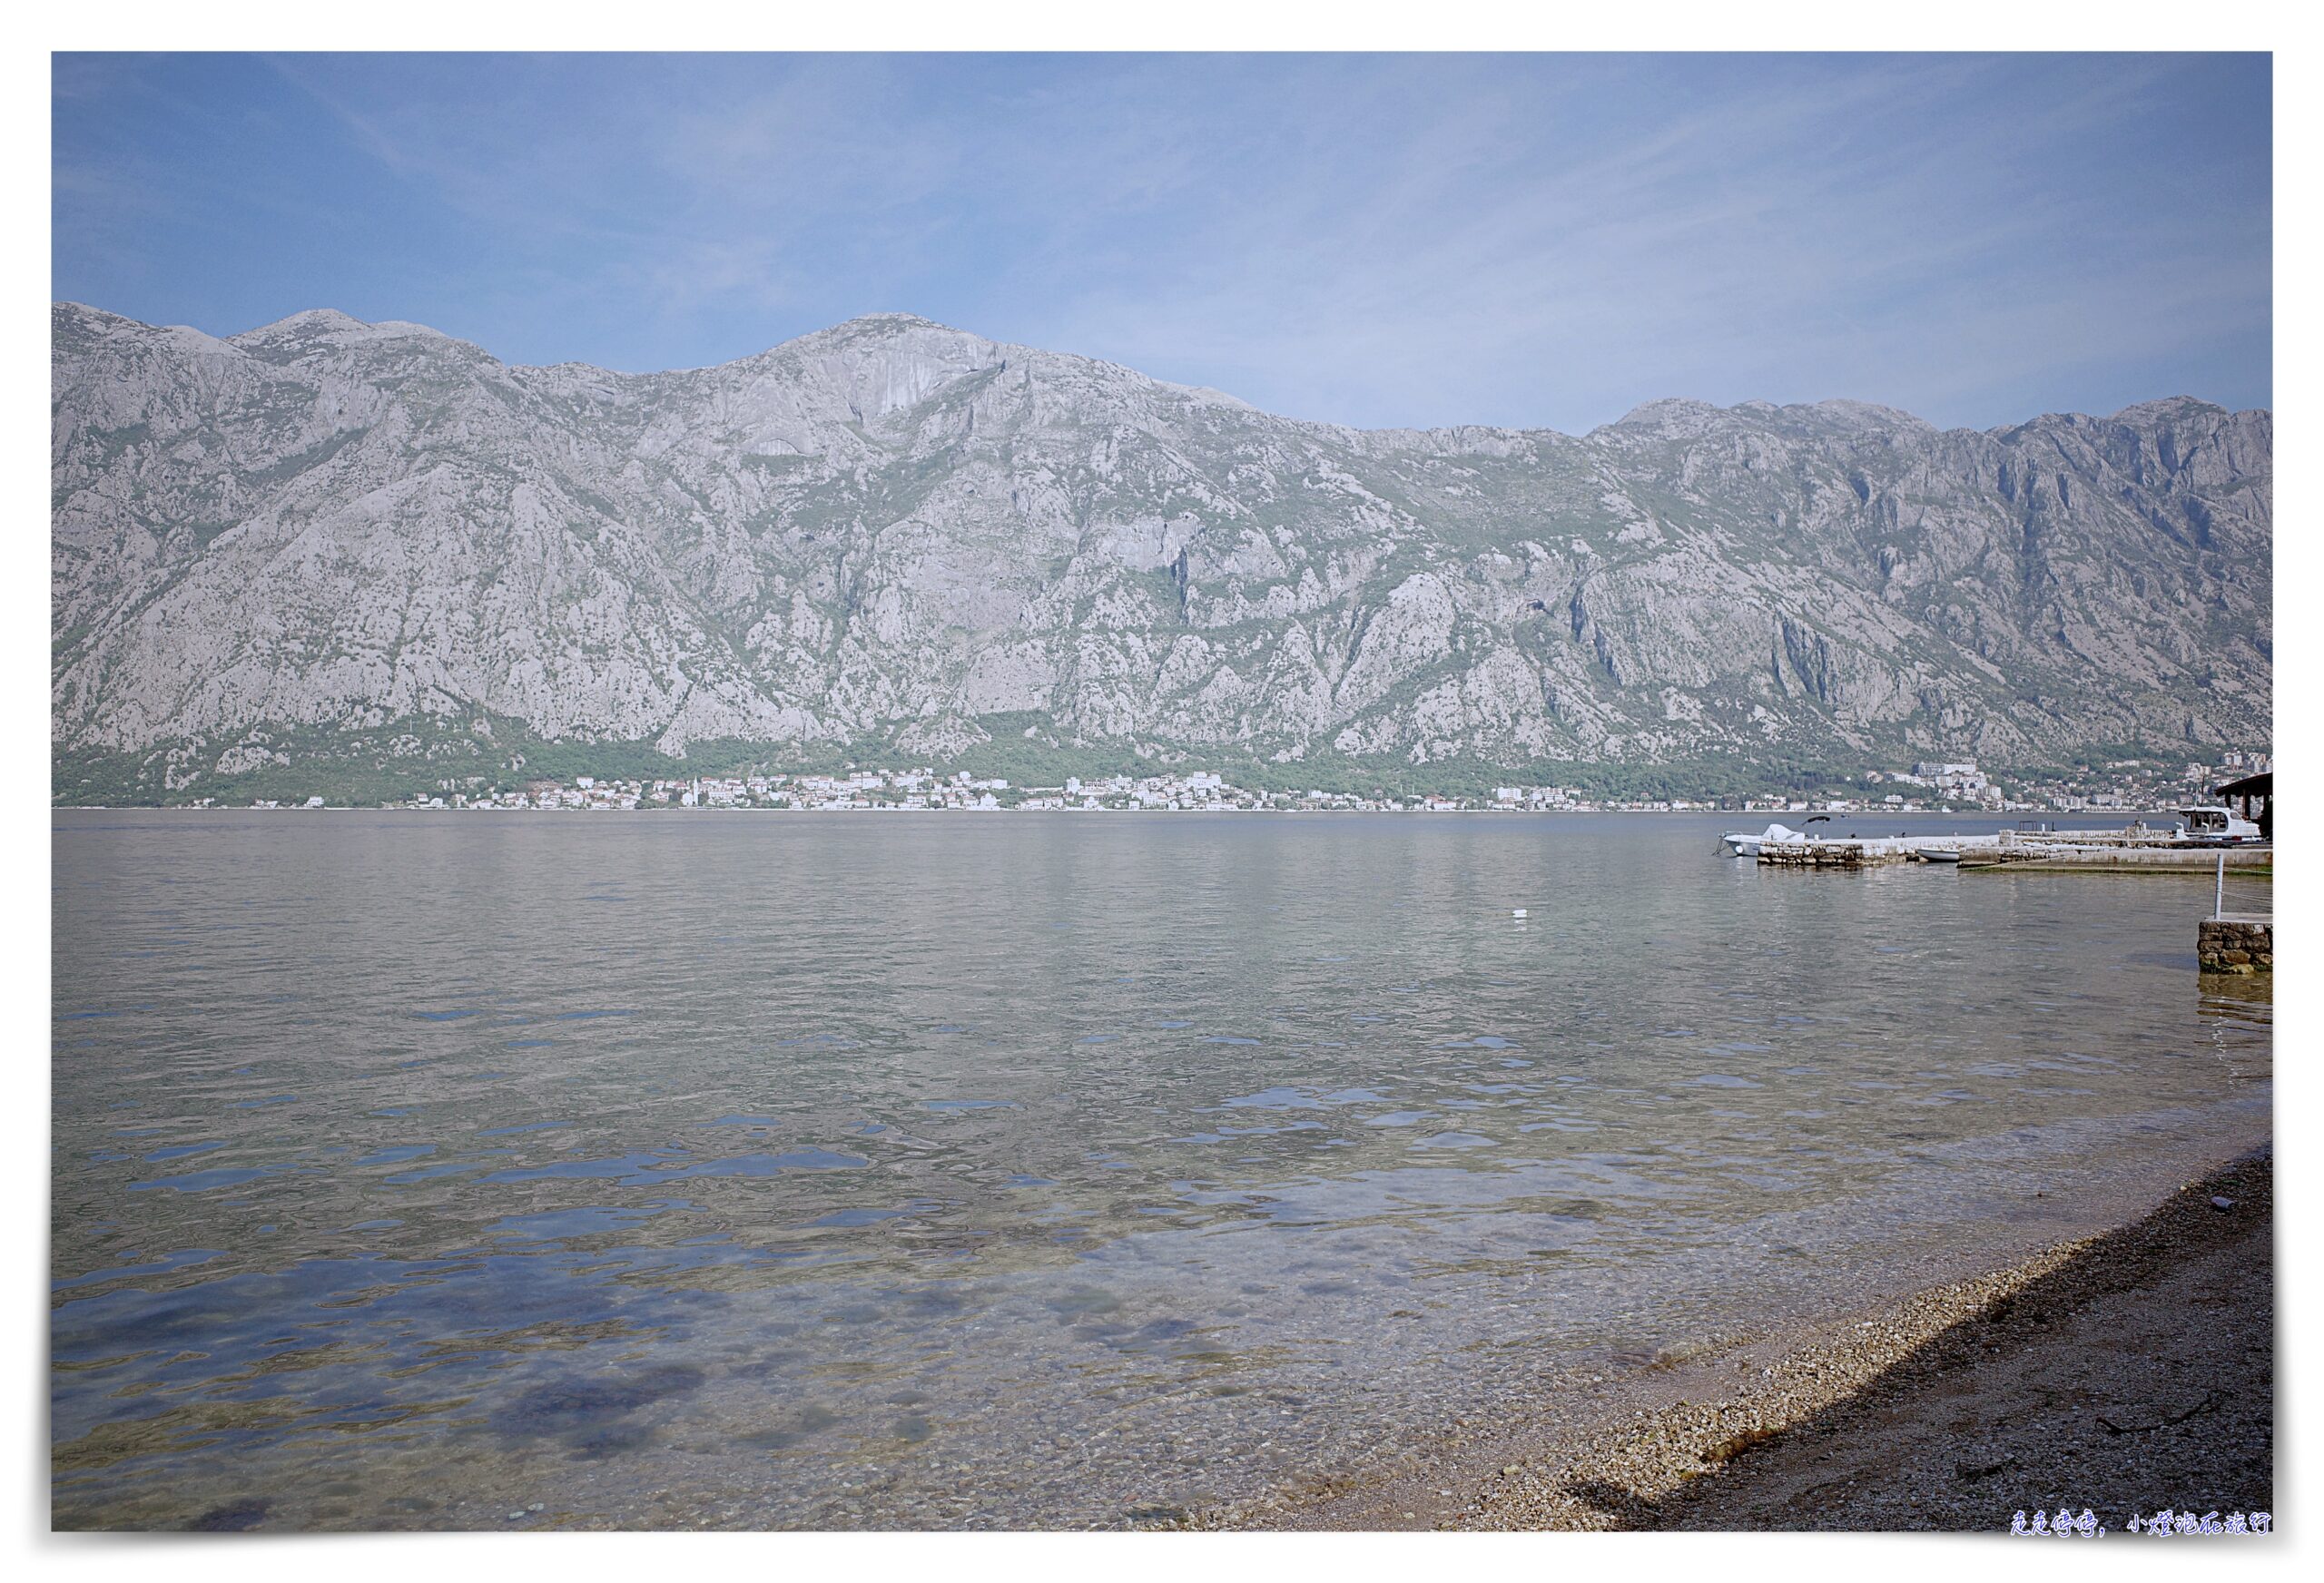 延伸閱讀：亞德里亞海Day5：自駕前往黑山共和國、科托峽灣、海關、自駕注意事項